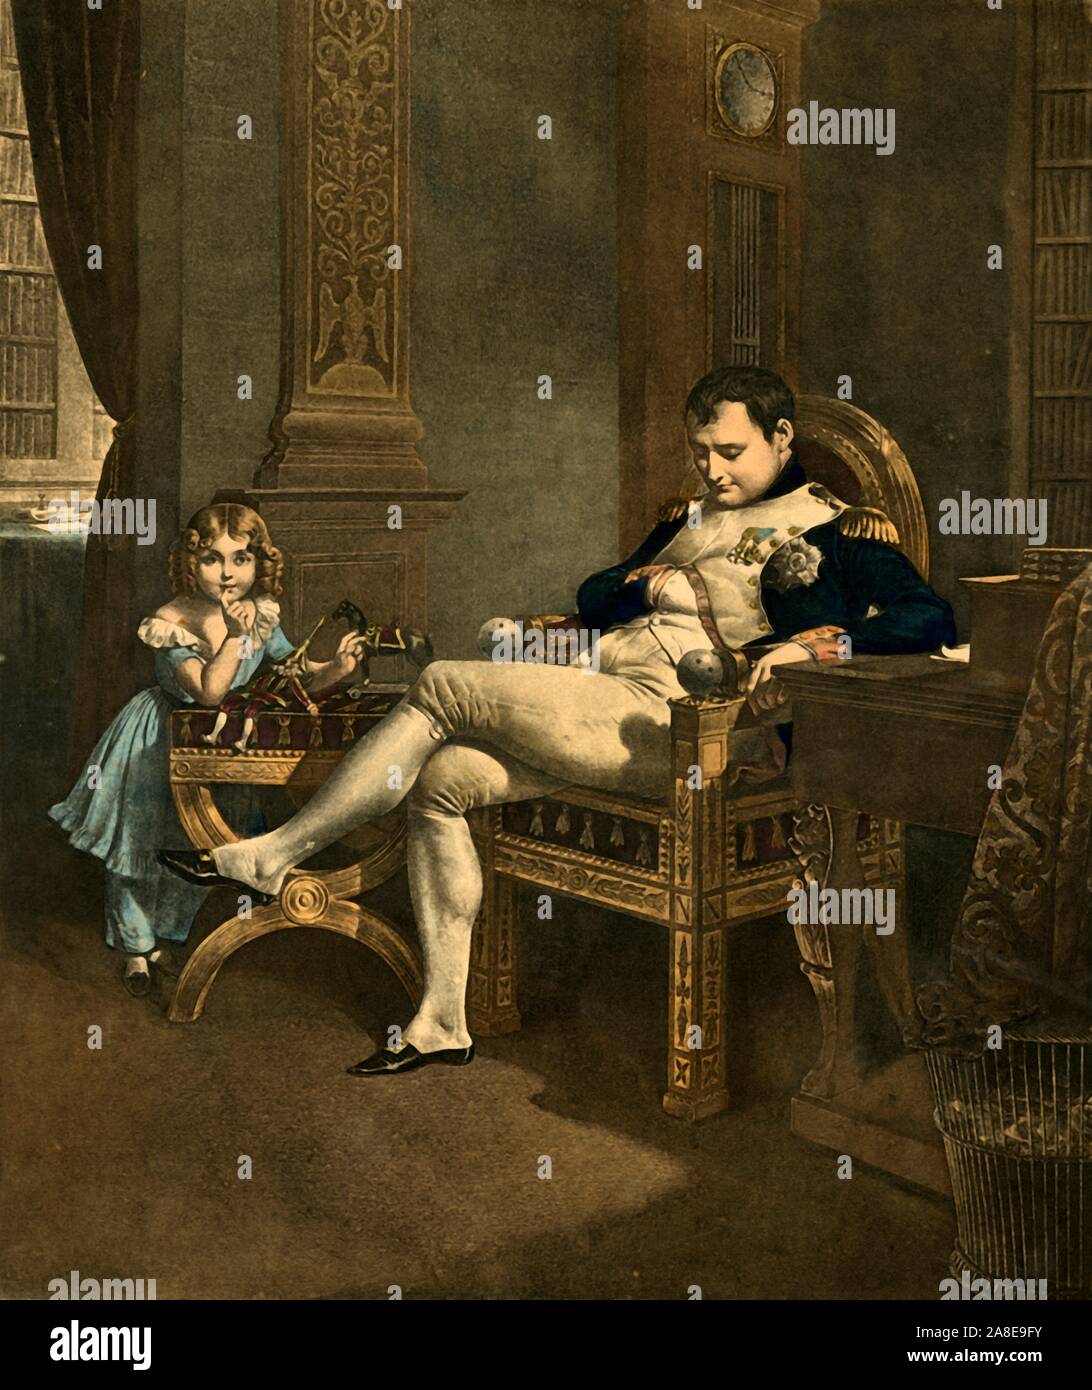 "Chut ! Papa Dort !', 19e siècle, (1921). 'Ssh, Papa est en train de dormir !". L'empereur Napoléon sommeille dans son trône comme un enfant est titulaire d'un doigt sur sa (ses ?) les lèvres. Toys - poupée d'un poinçon et un cheval sur roues - sont sur le banc en face de l'enfant. Malgré la robe et anglaises, c'est peut-être le fils de Napoléon, également nommé Napoléon, (1811-1832). Il était commun pour les garçons de porter des vêtements des filles au cours de cette période. (Napoléon n'ai une belle-fille, Hortense de Beauharnais, qui aurait été d'environ 12 quand sa mère a rencontré Napoléon en 1795). À partir de "Napoléon", par Raymond Guyot, [H. Floury, Paris, 1921] Banque D'Images